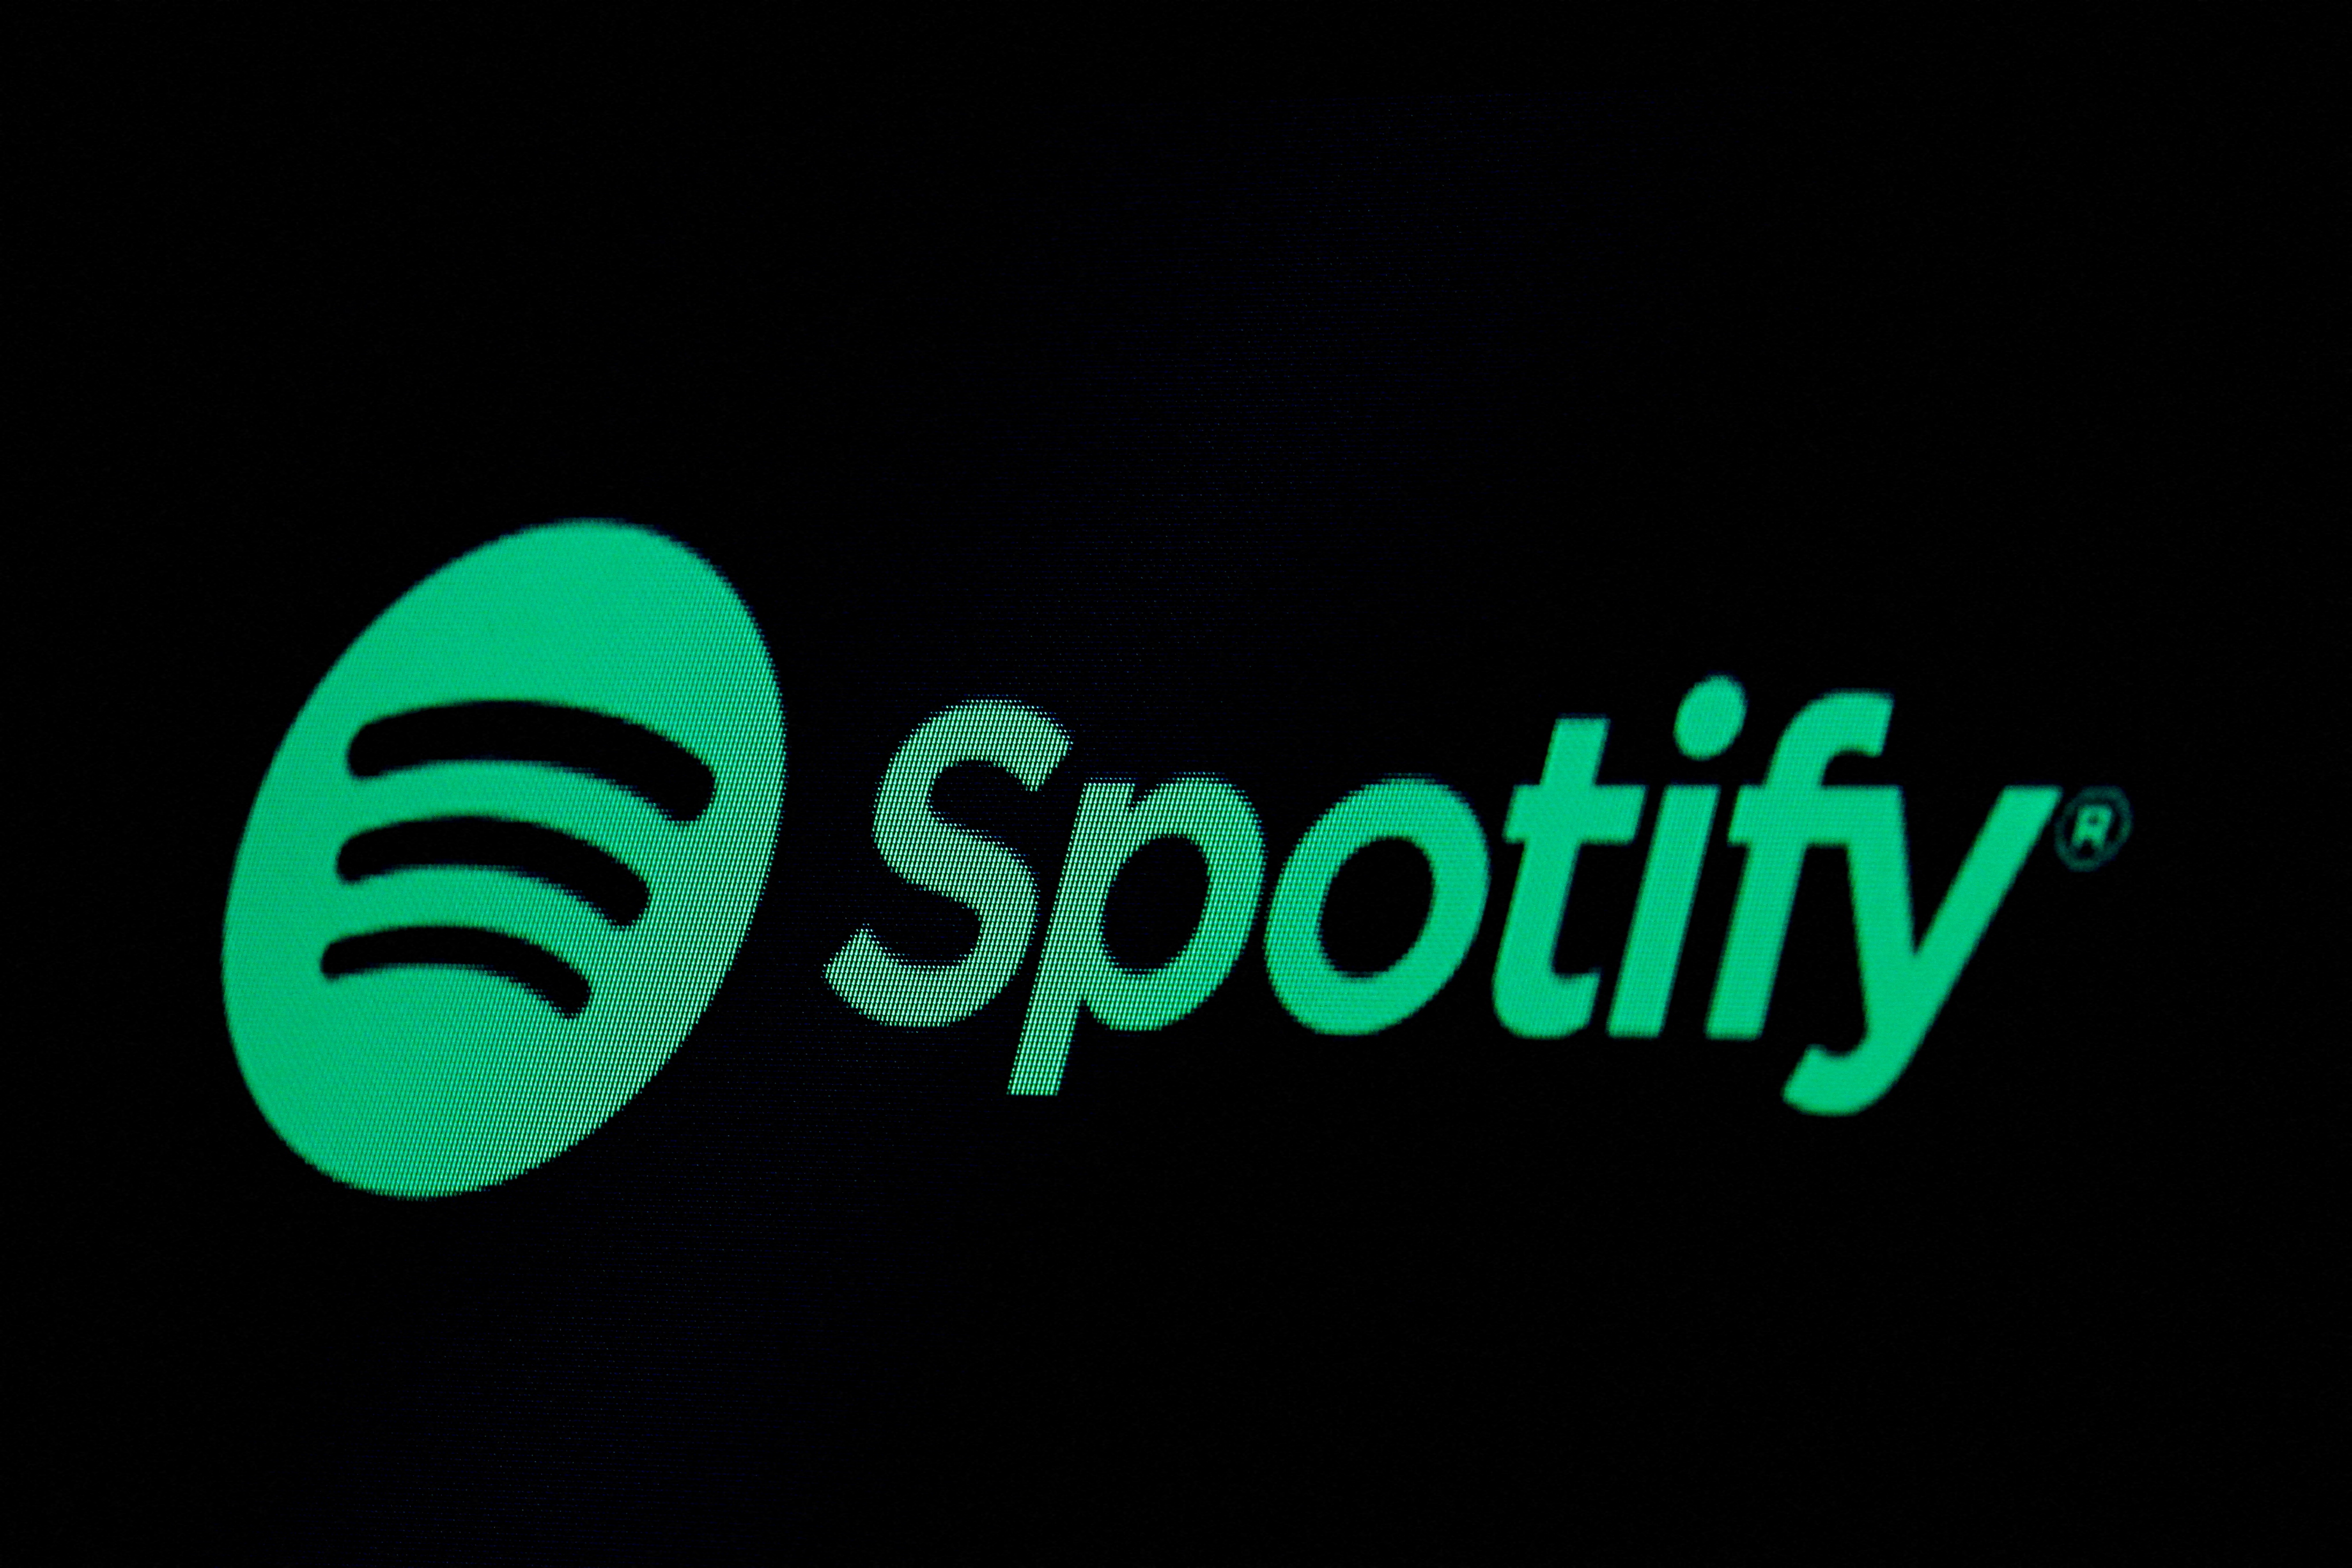 The Spotify logo 